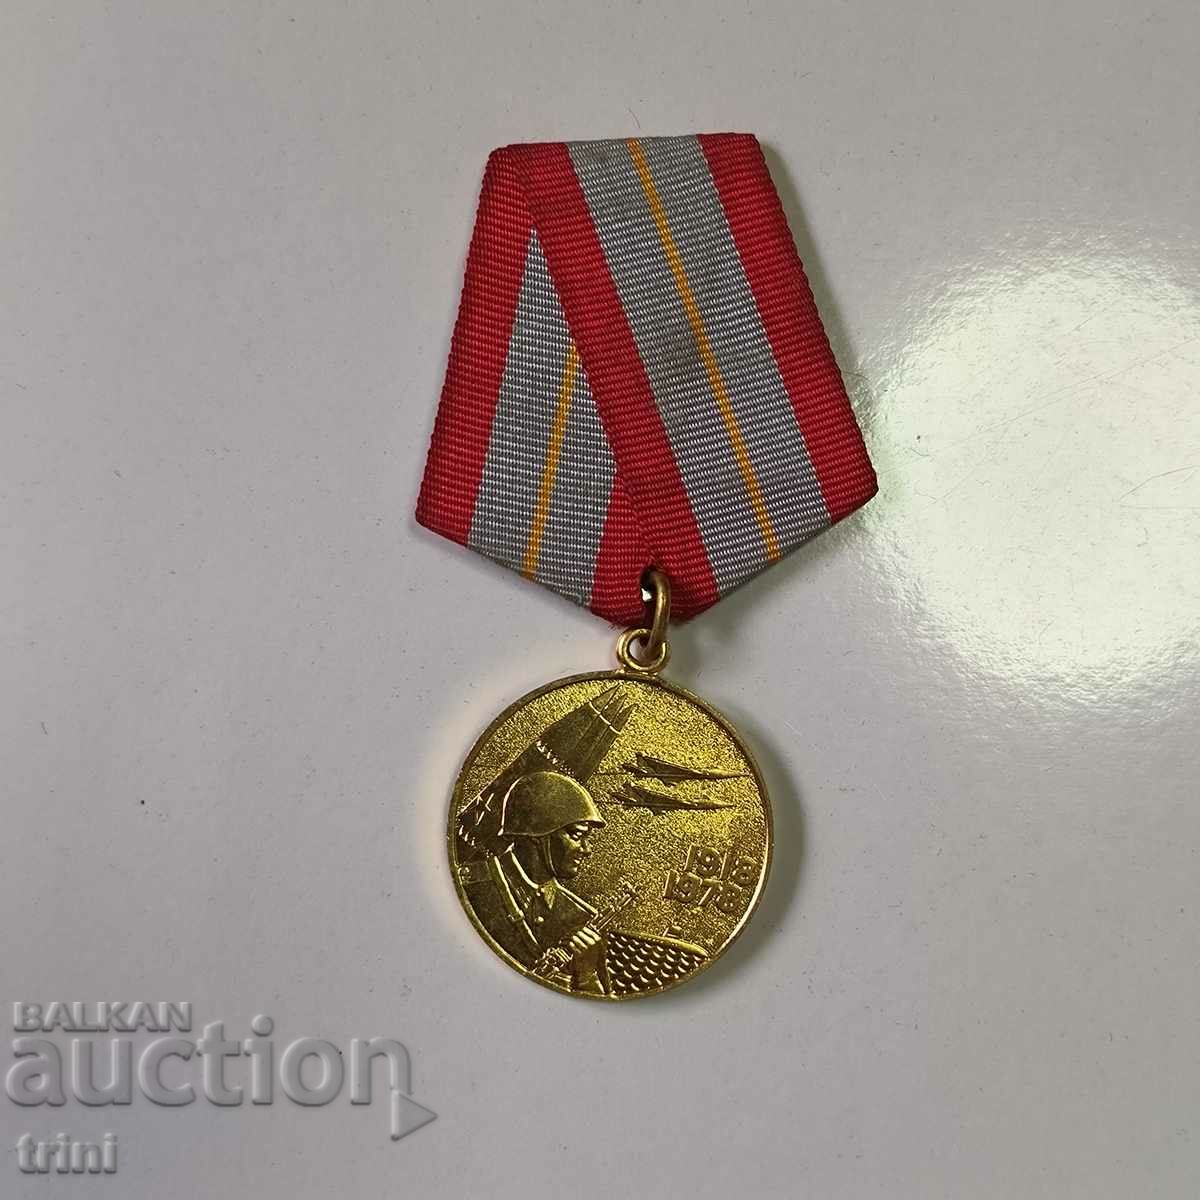 Μετάλλιο Ενόπλων Δυνάμεων της ΕΣΣΔ 60 χρόνια